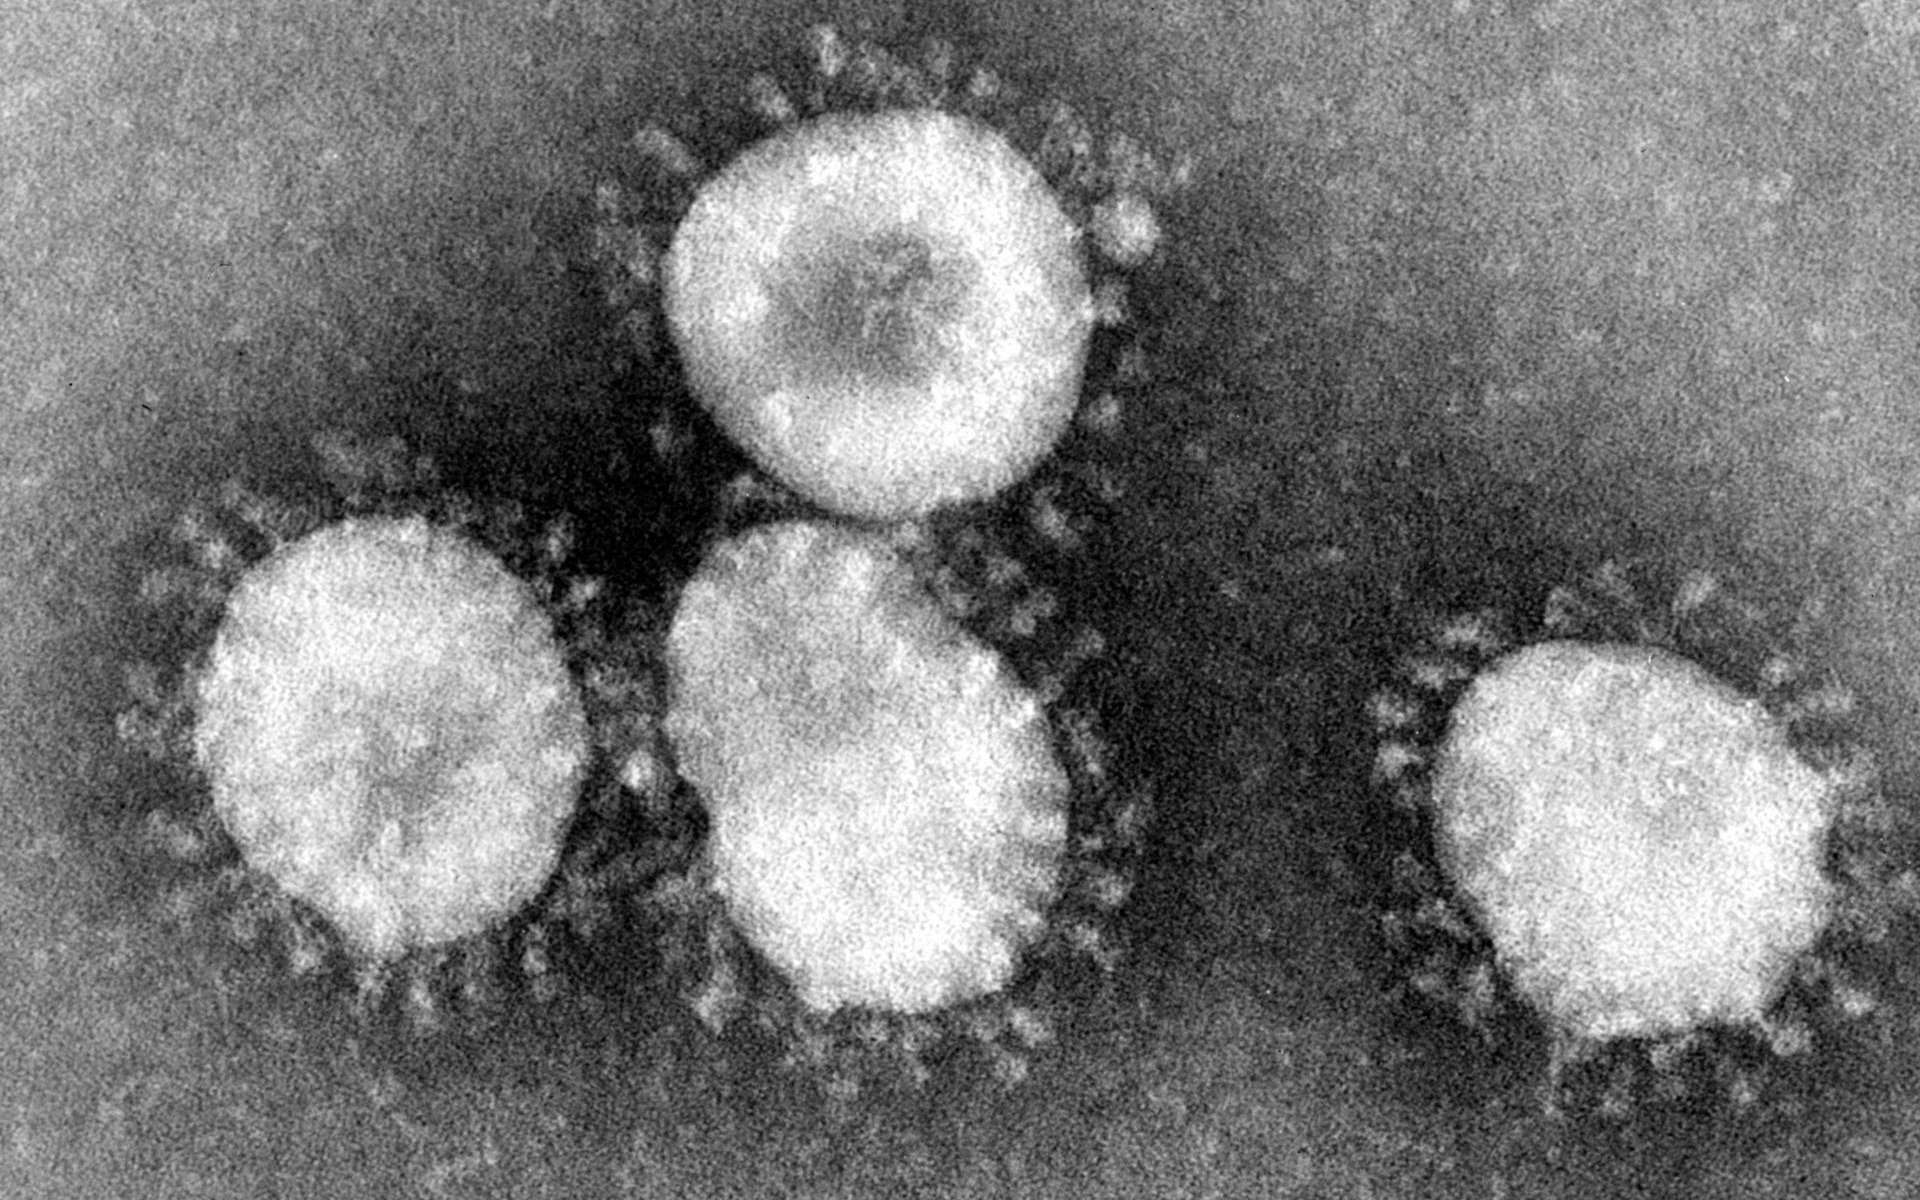 Le mystérieux virus responsable de la pneumonie en Chine a été identifié